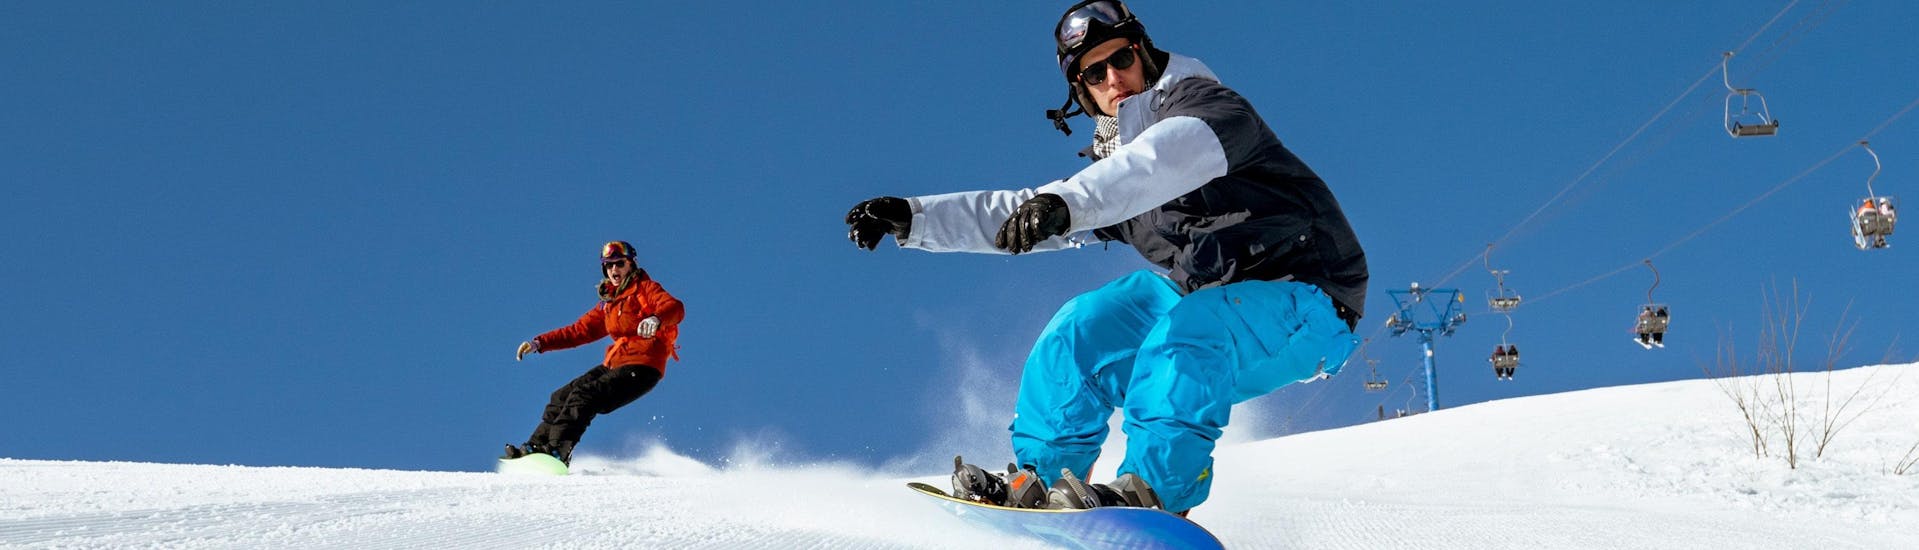 Twee snowboarders racen tijdens hun snowboardlessen over een vers aangelegde piste.